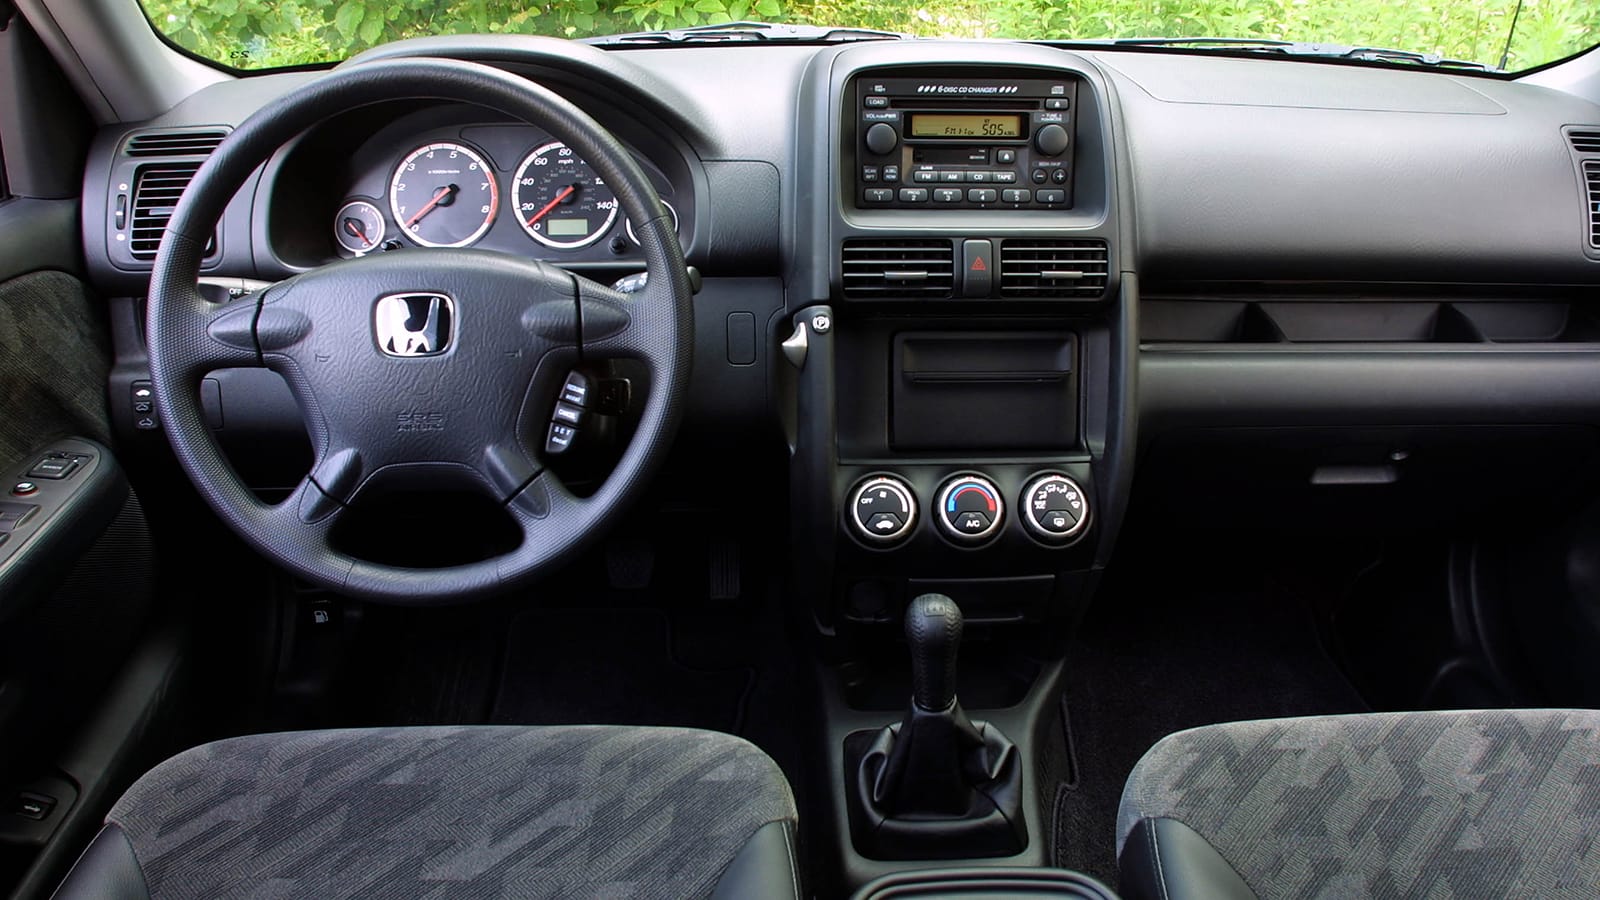 2002 Honda CR-V